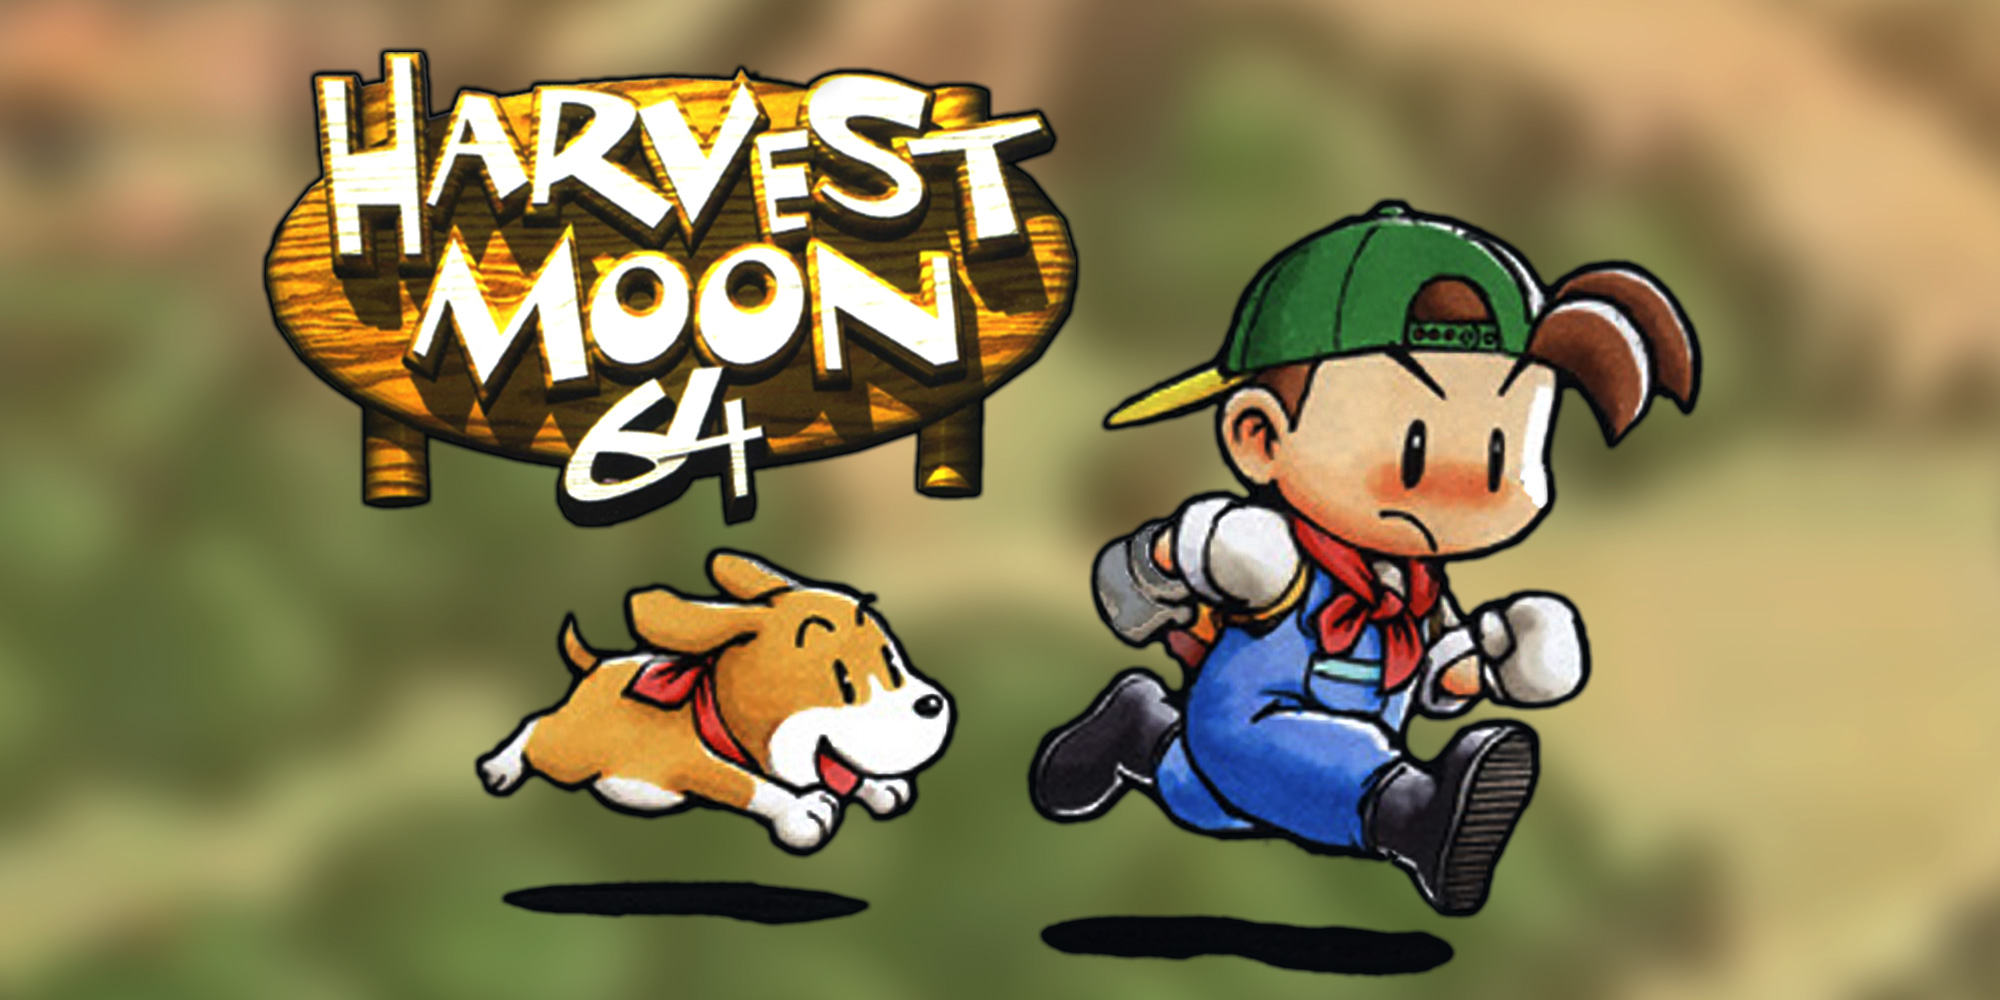 Harvest moon bot. Harvest Moon 64. Harvest Moon Нинтендо. Harvest Moon Nintendo 64. Harvest Moon Wii.